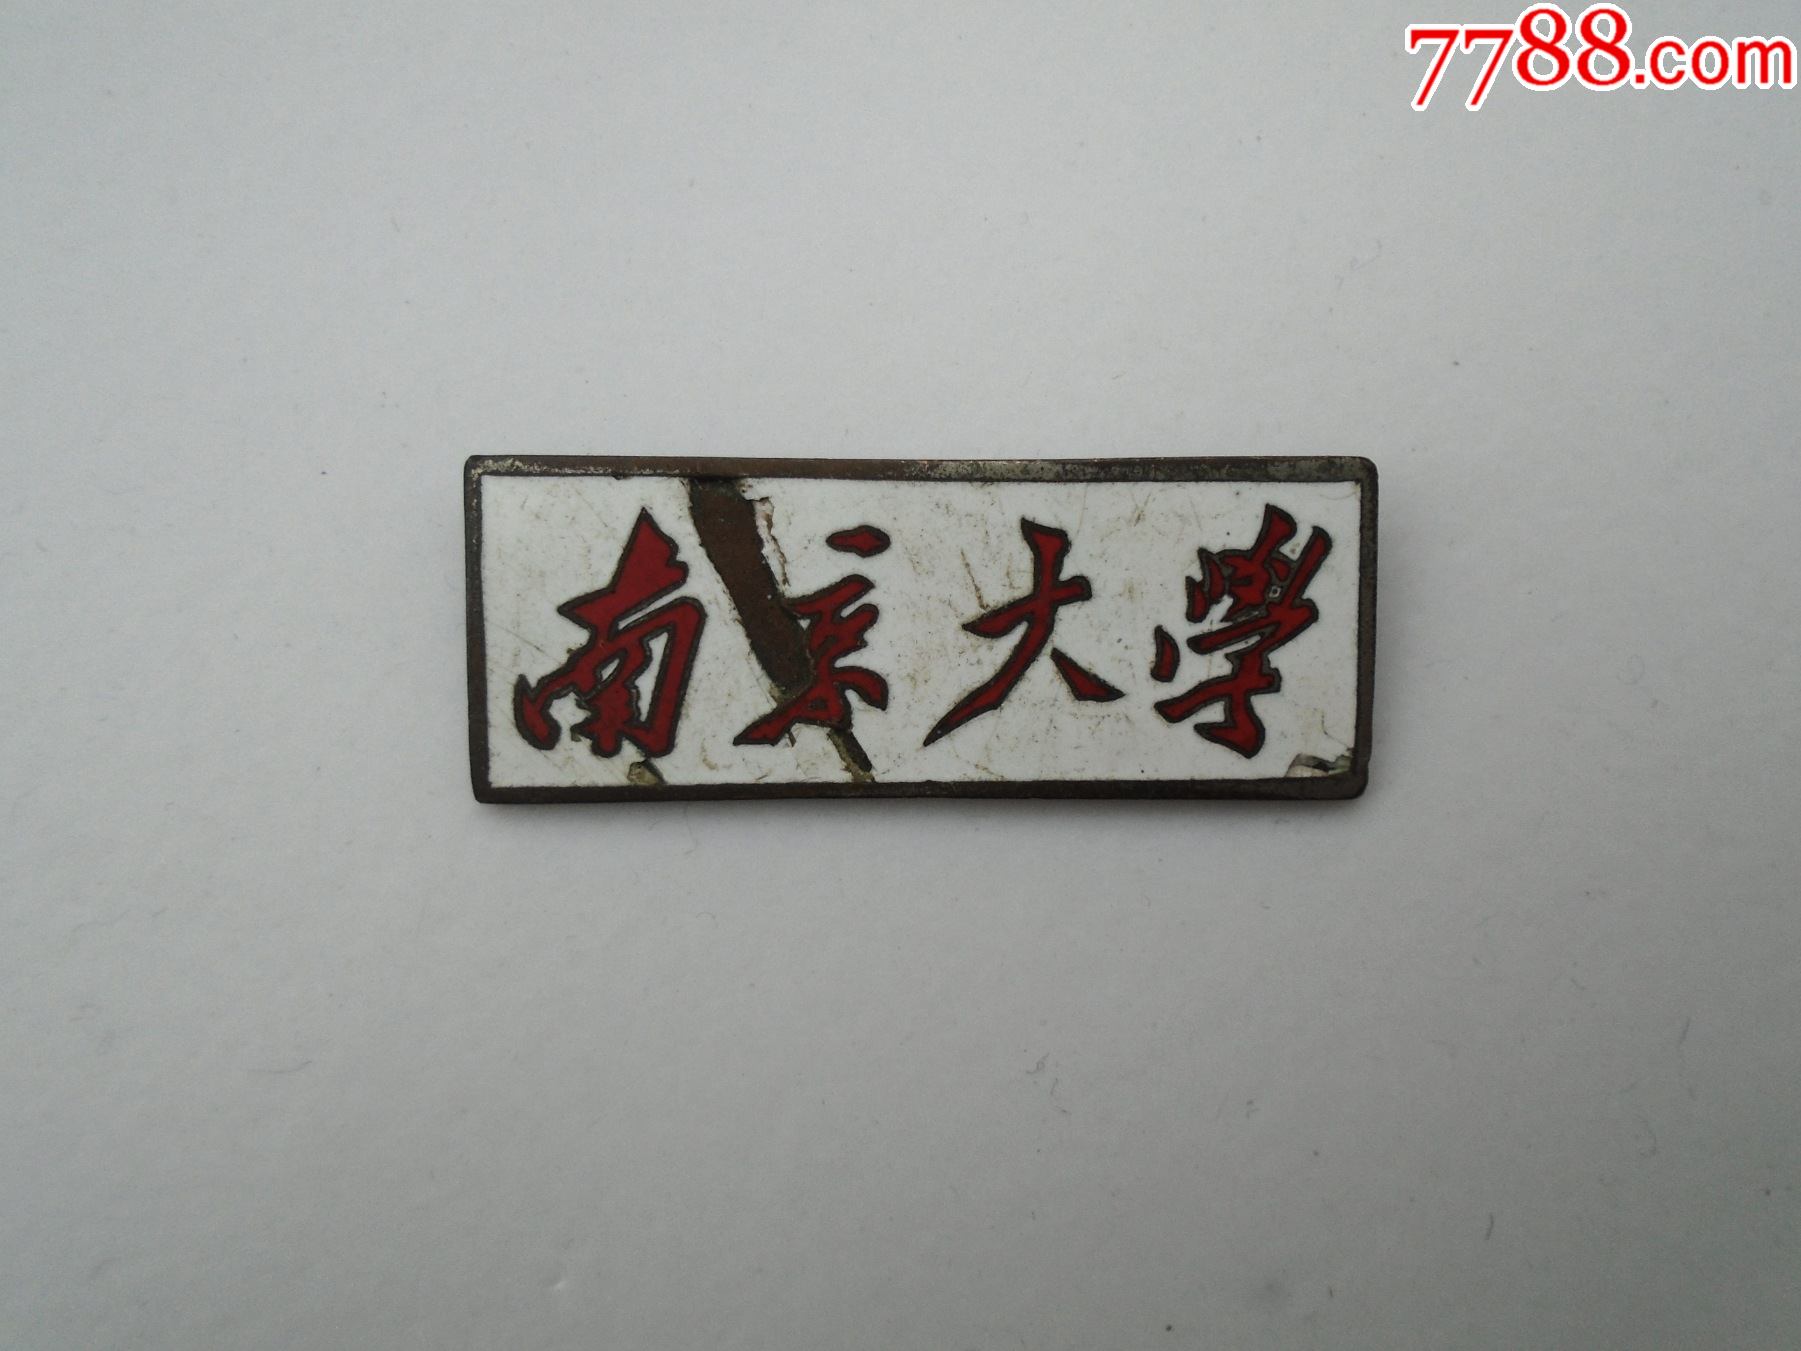 南京大学早期老校徽,包真包老.尺寸:4.2*1.5厘米.材质